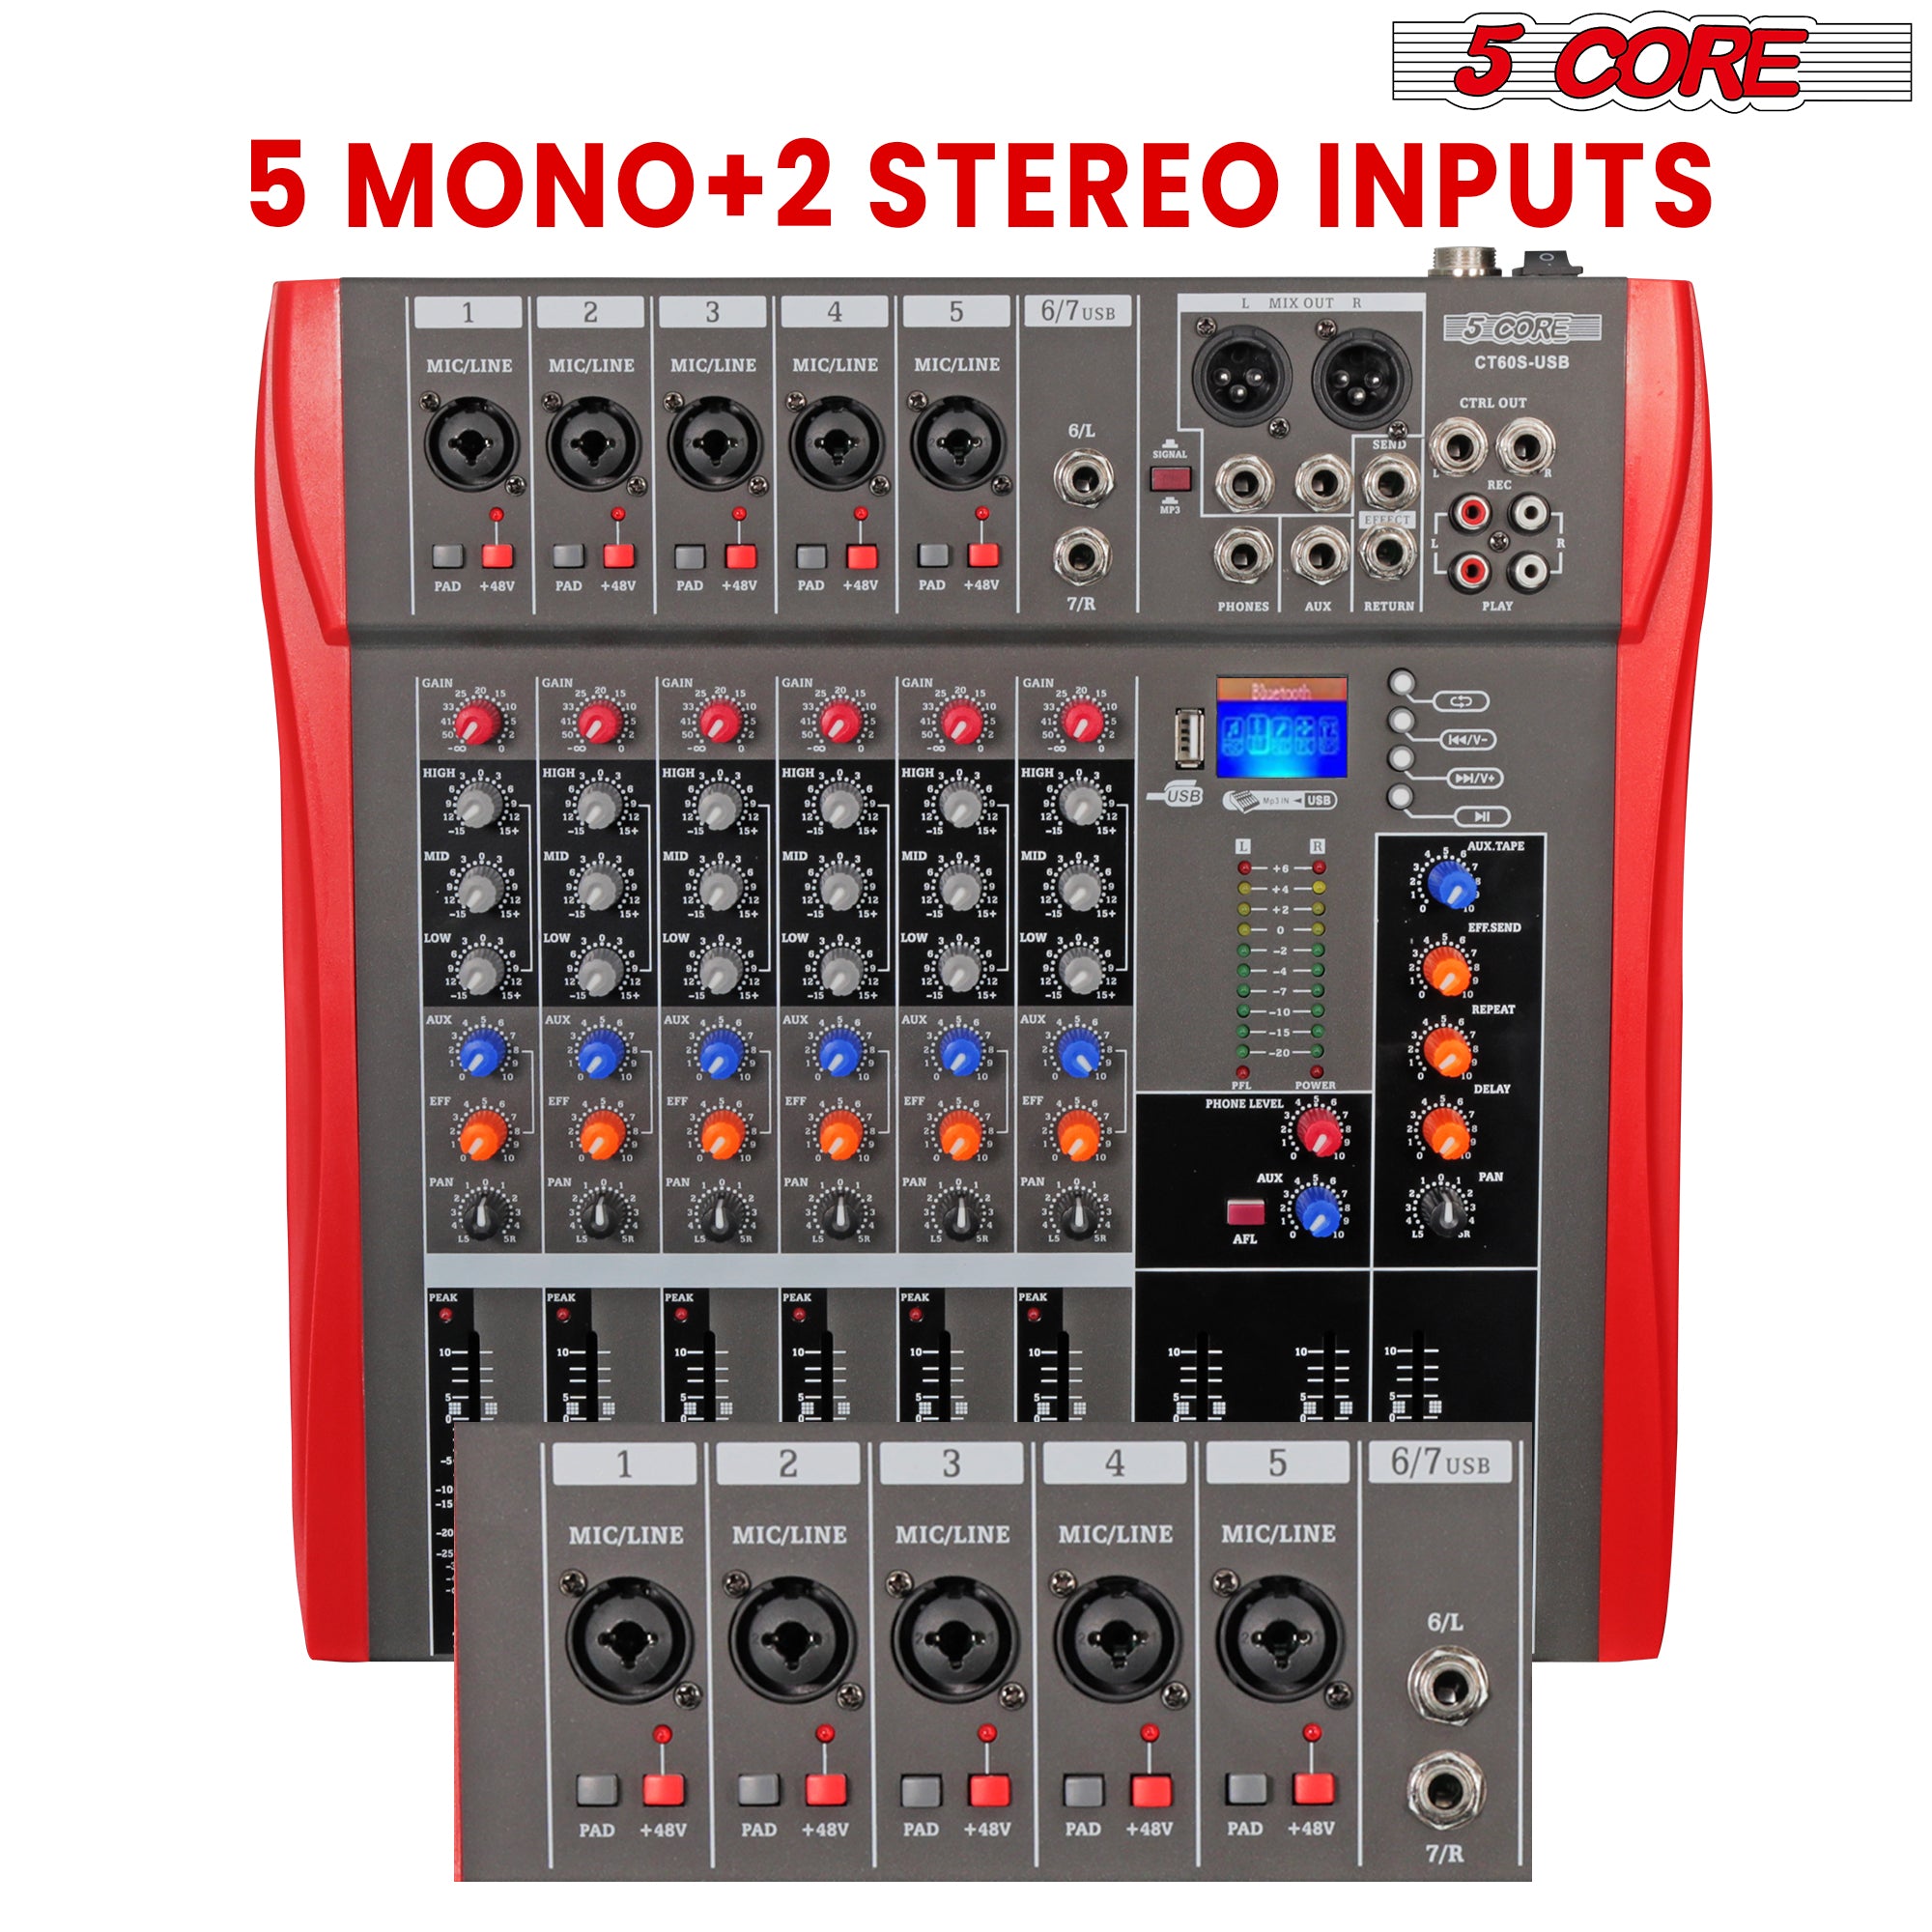 2 mono + 2 stereo inputs